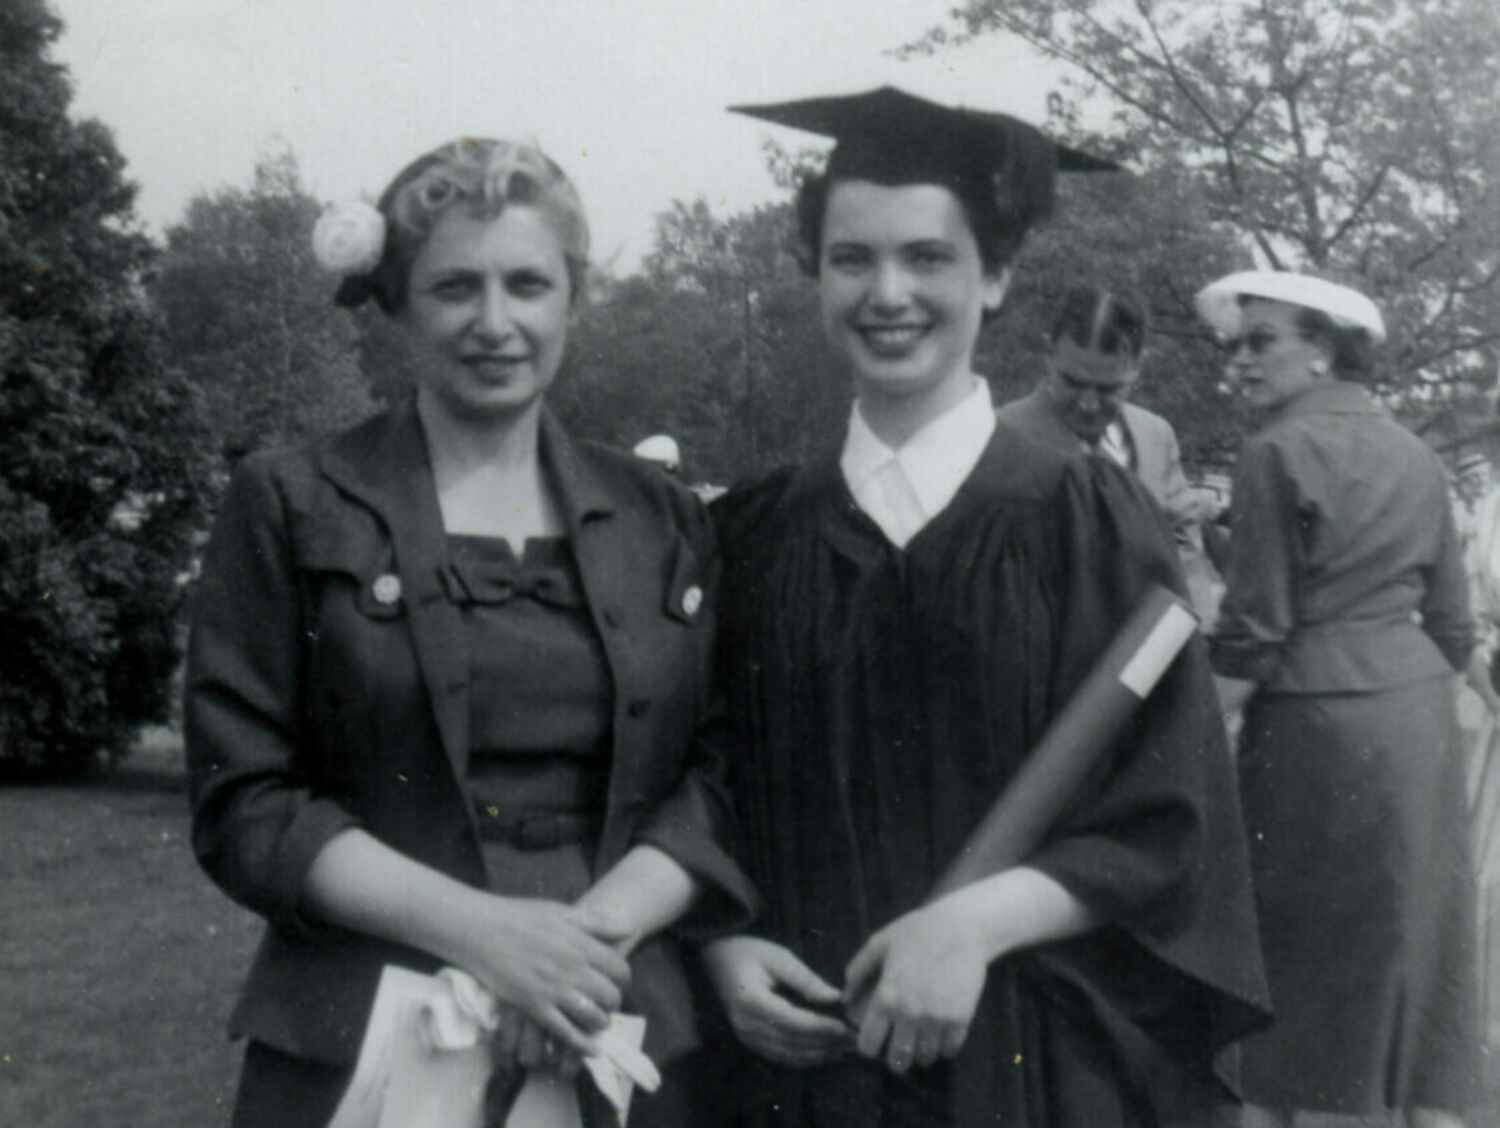 Deux femmes posent côte à côte en souriant. La plus jeune des deux porte une toge et un mortier.